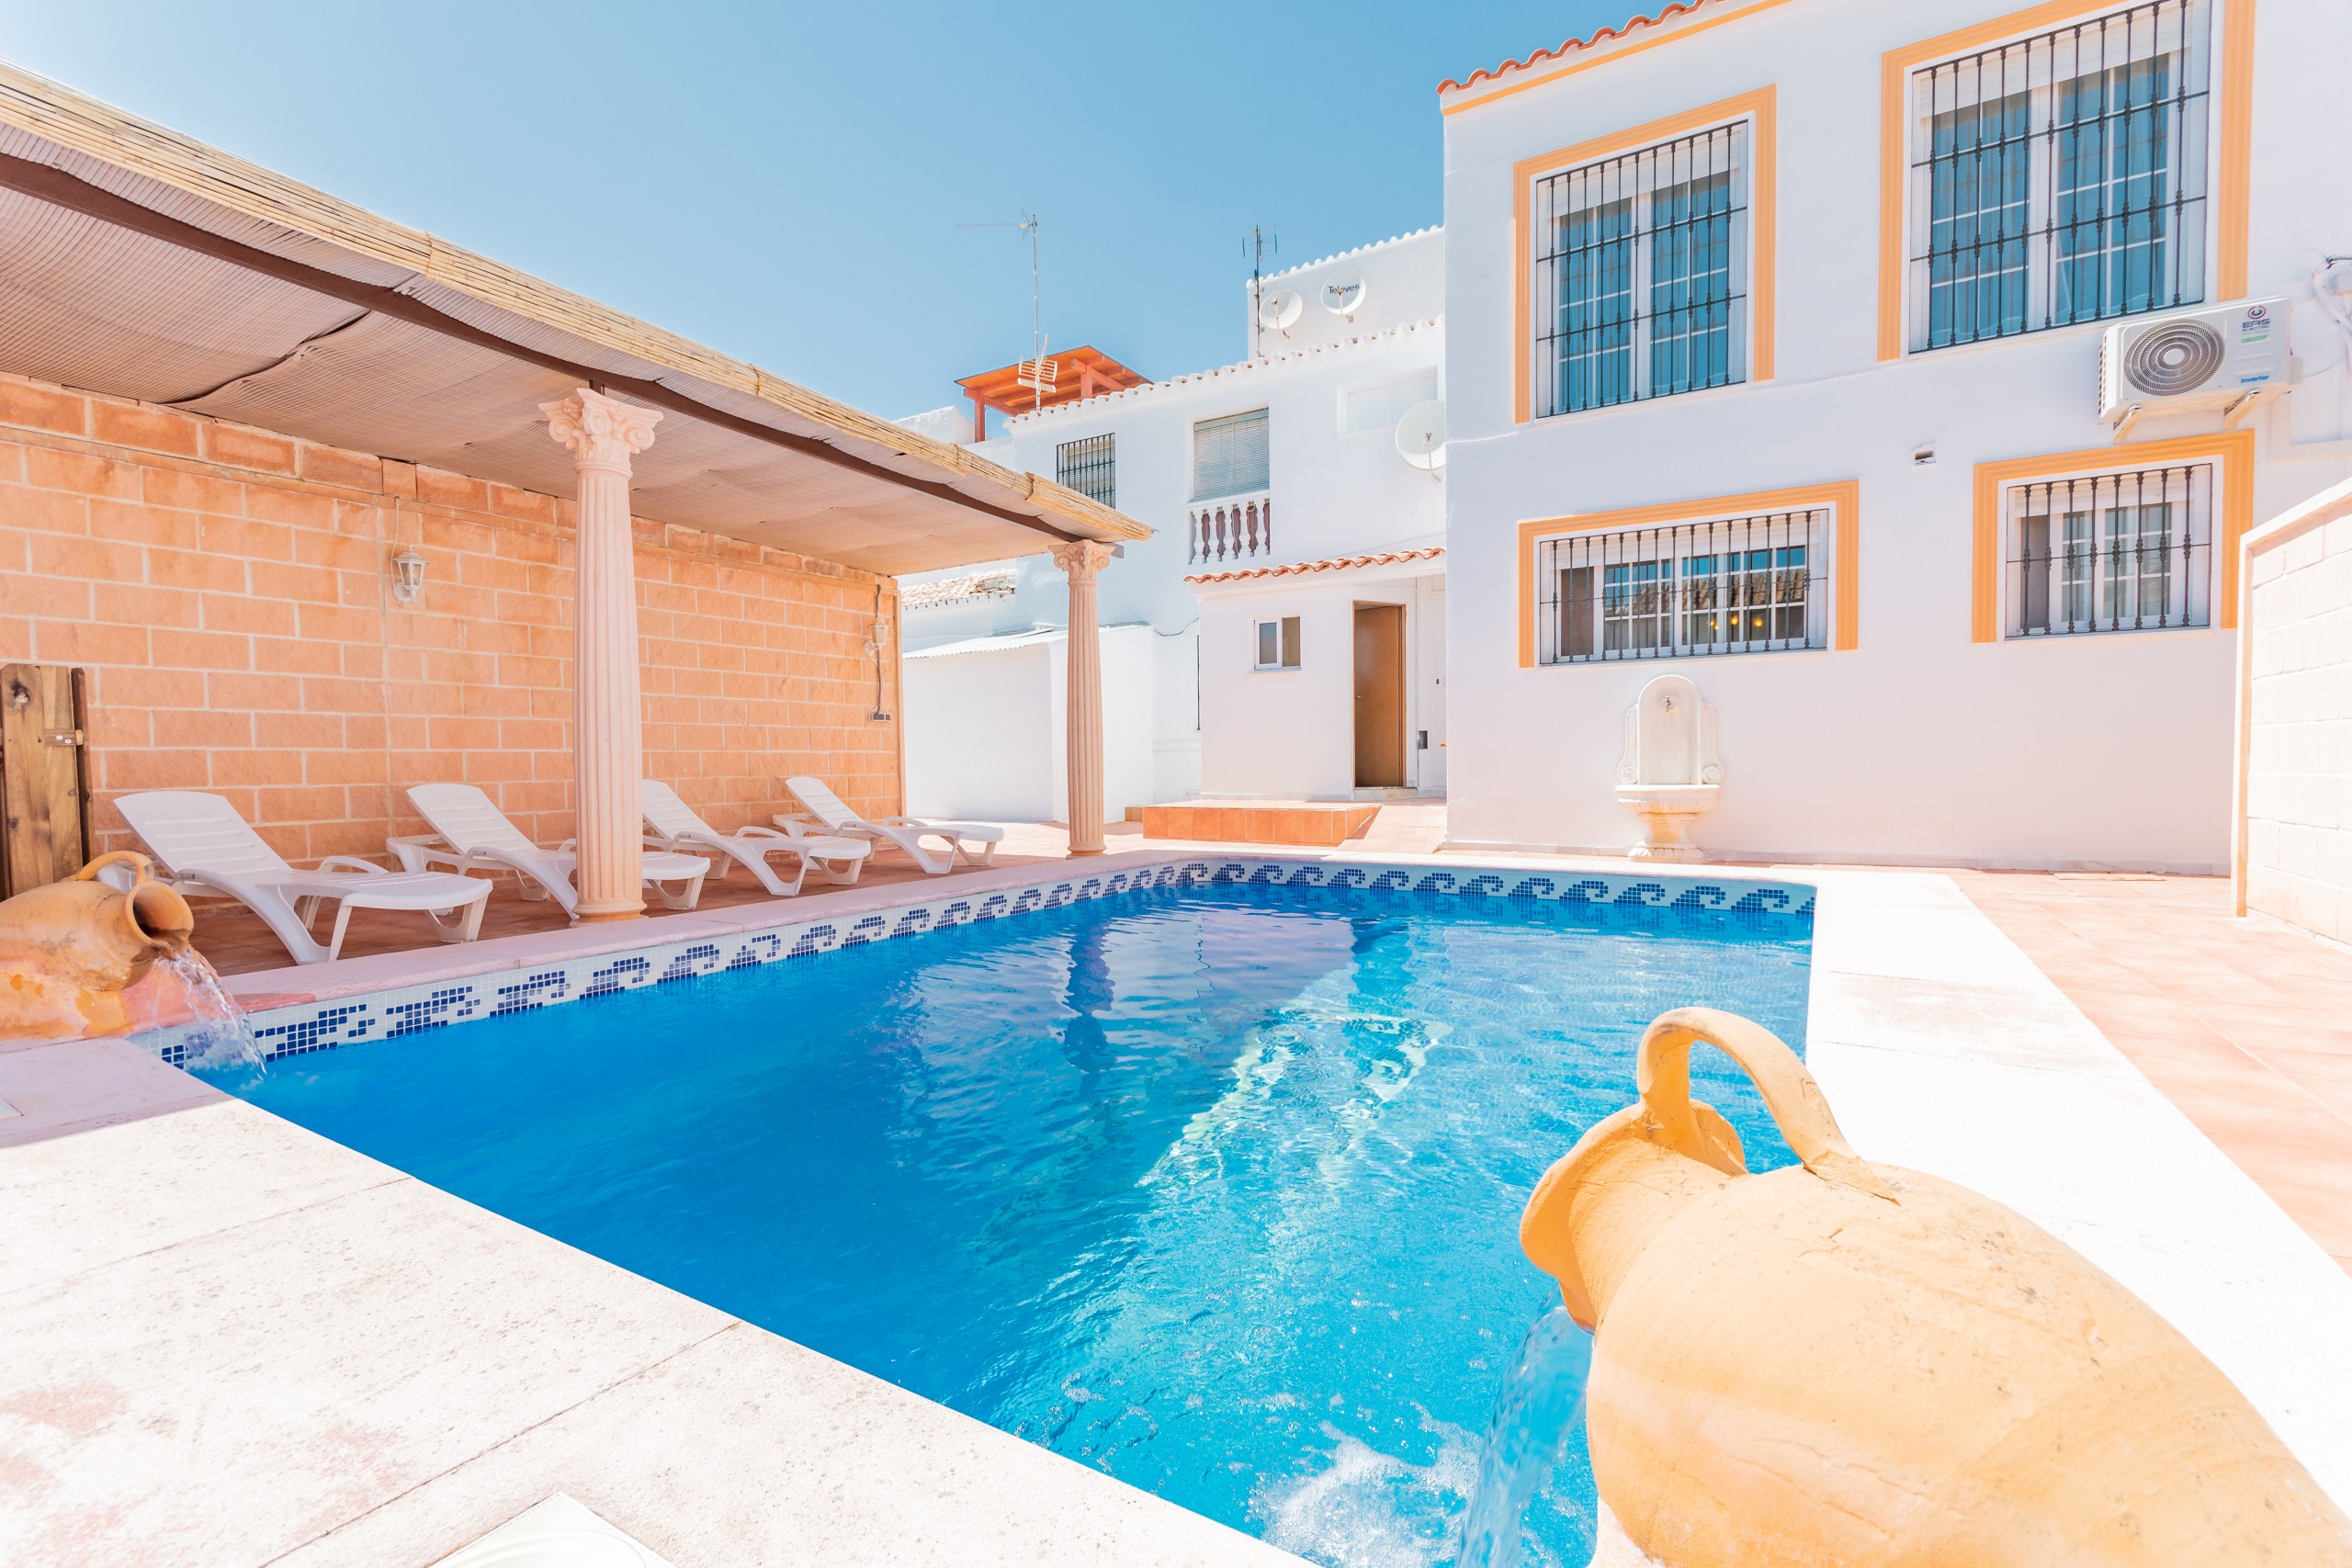 Enjoy the private pool of this Villa in Alhaurín el Grande (Málaga)